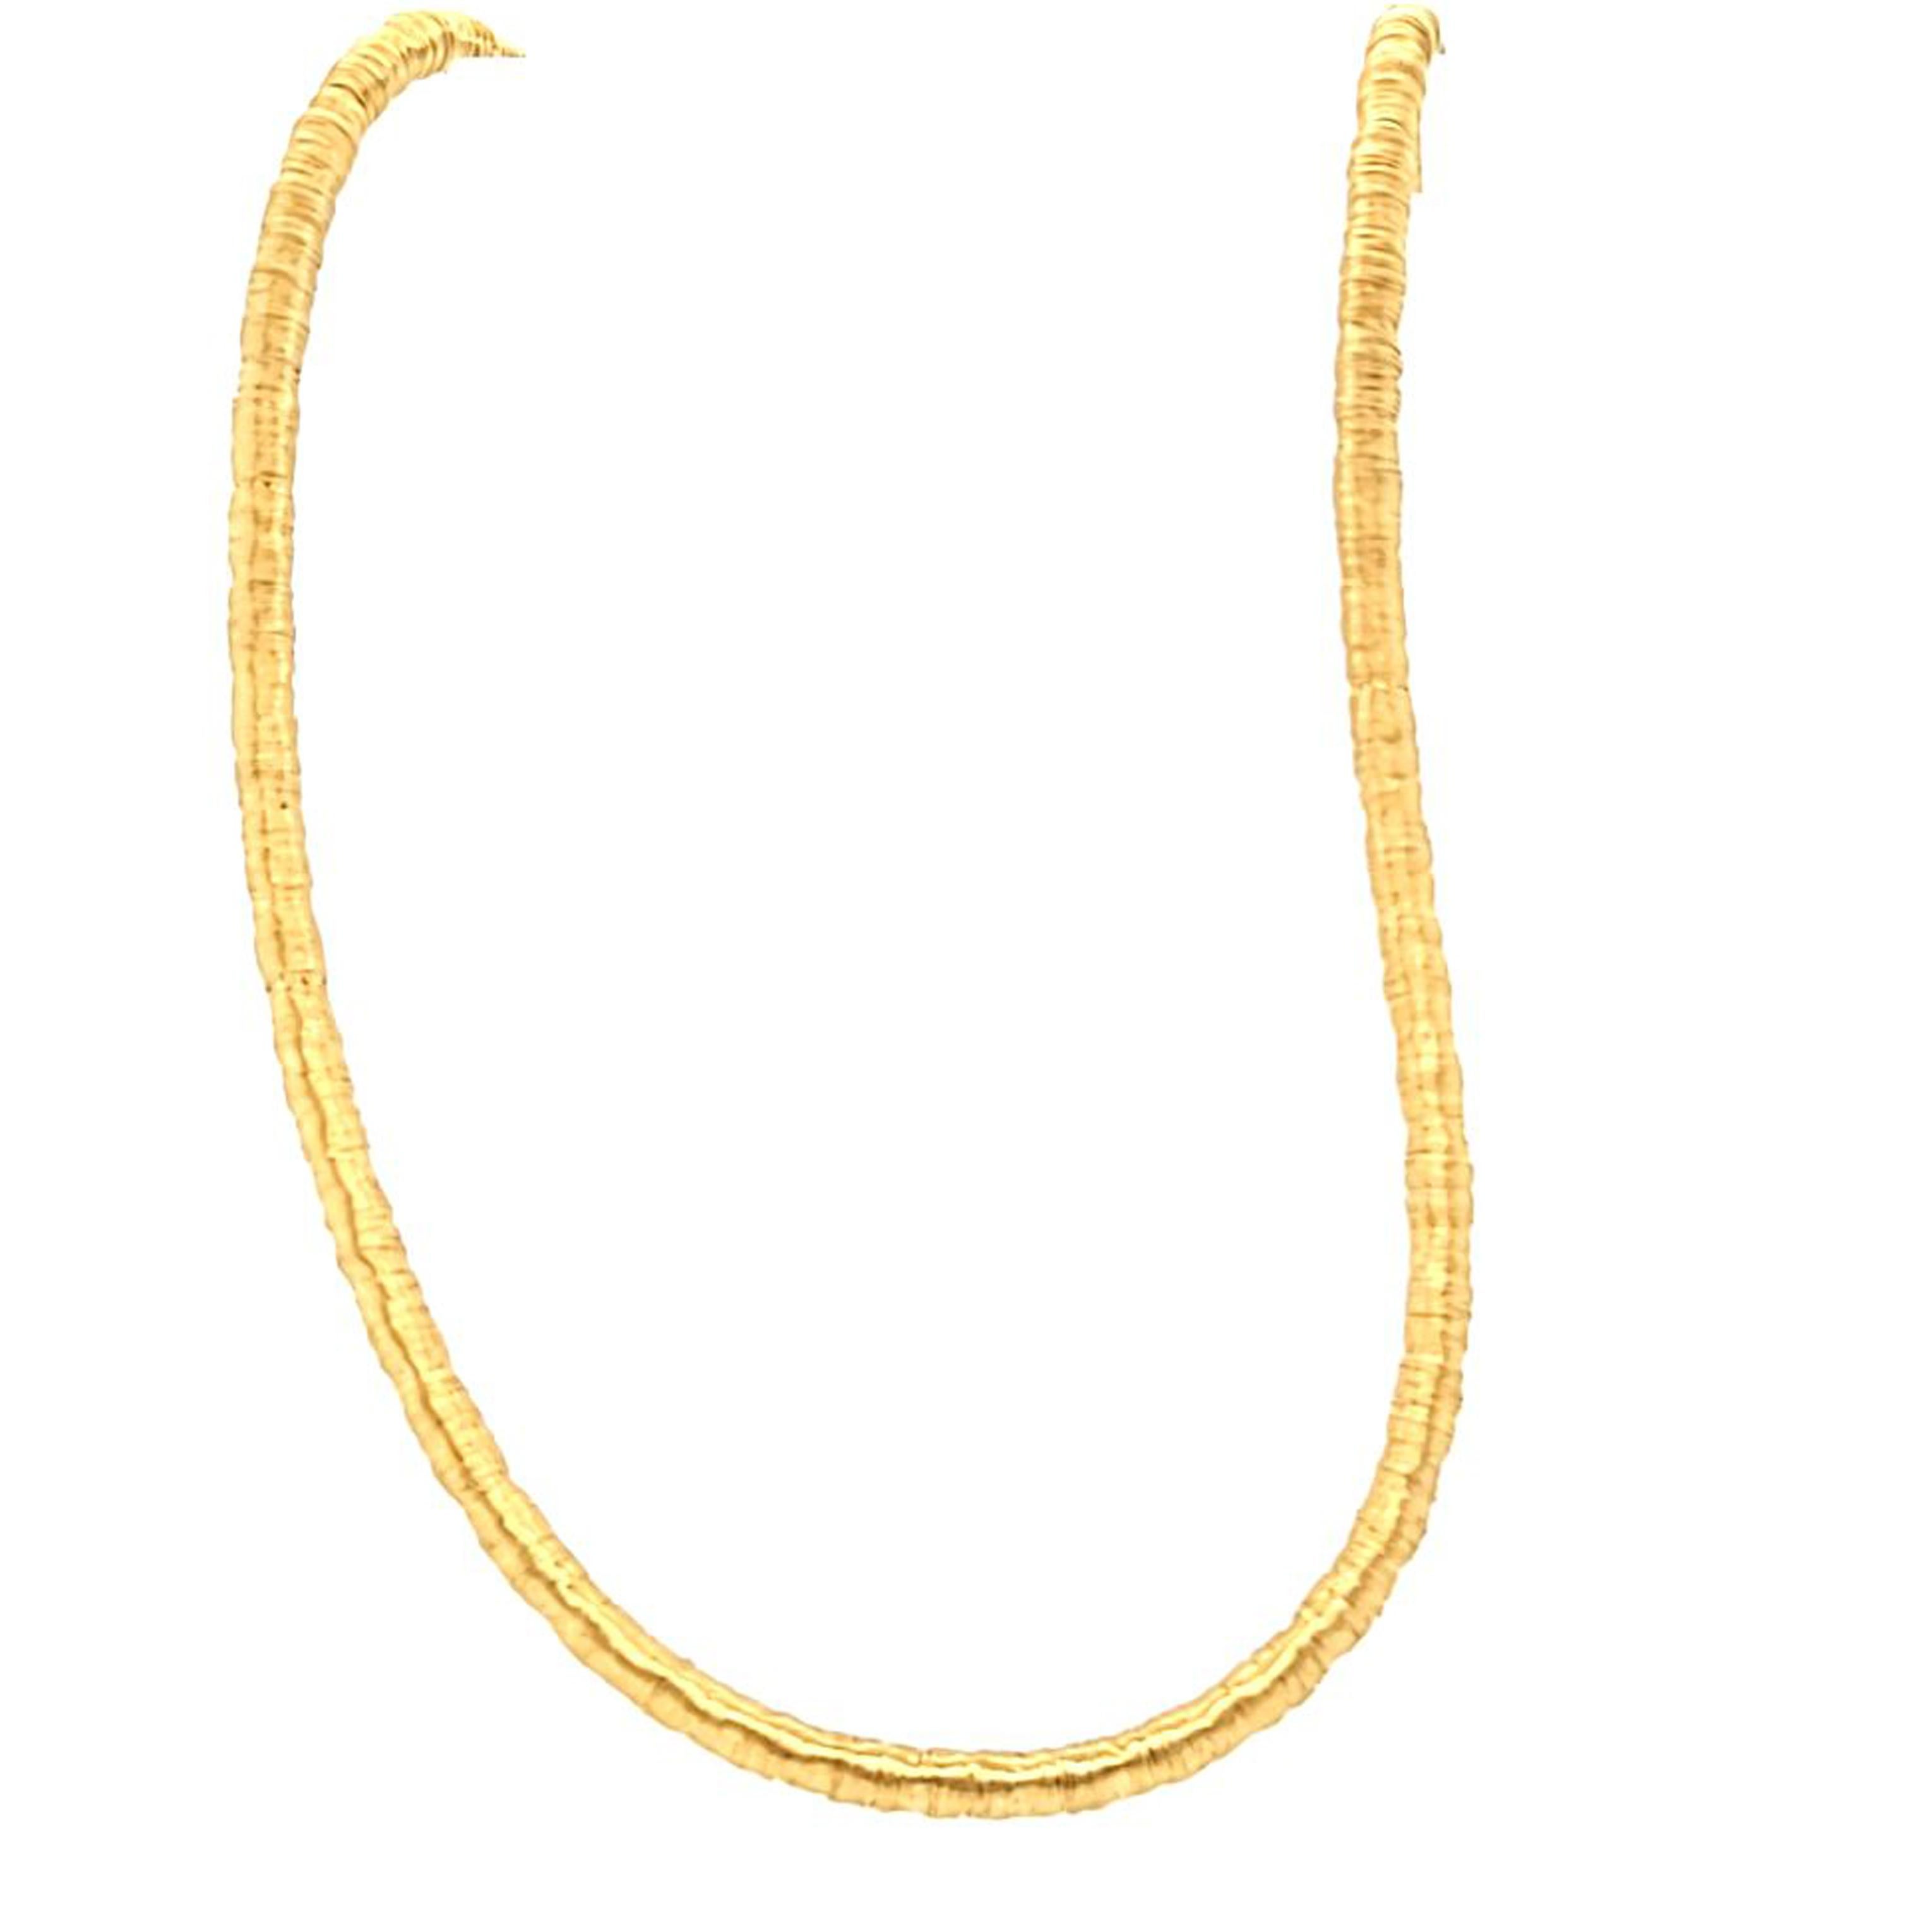 Collier en or jaune 18 carats avec texture en spirale de 4 mm, mesurant 16 pouces de long et doté d'un fermoir en forme de homard. Le poids fini est de 27,1 grammes.